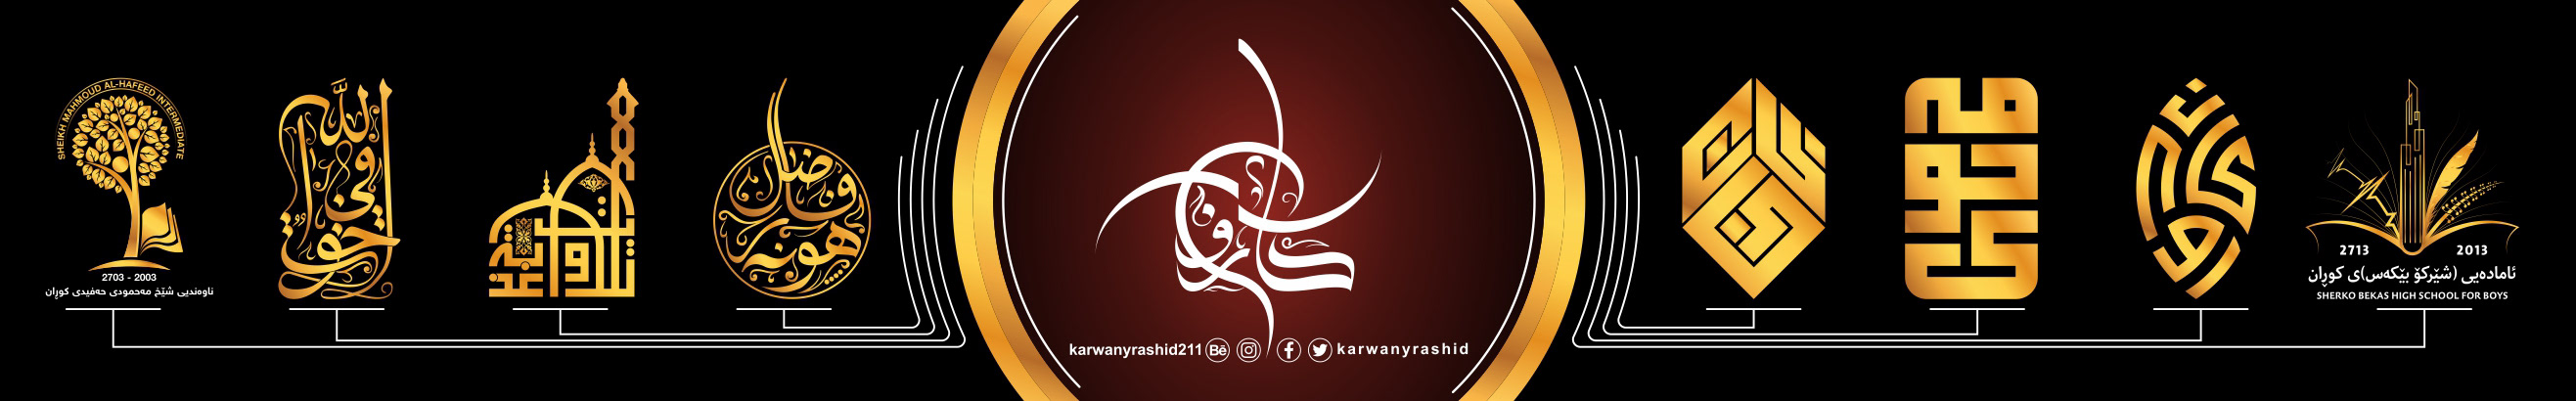 karwan yaseen's profile banner